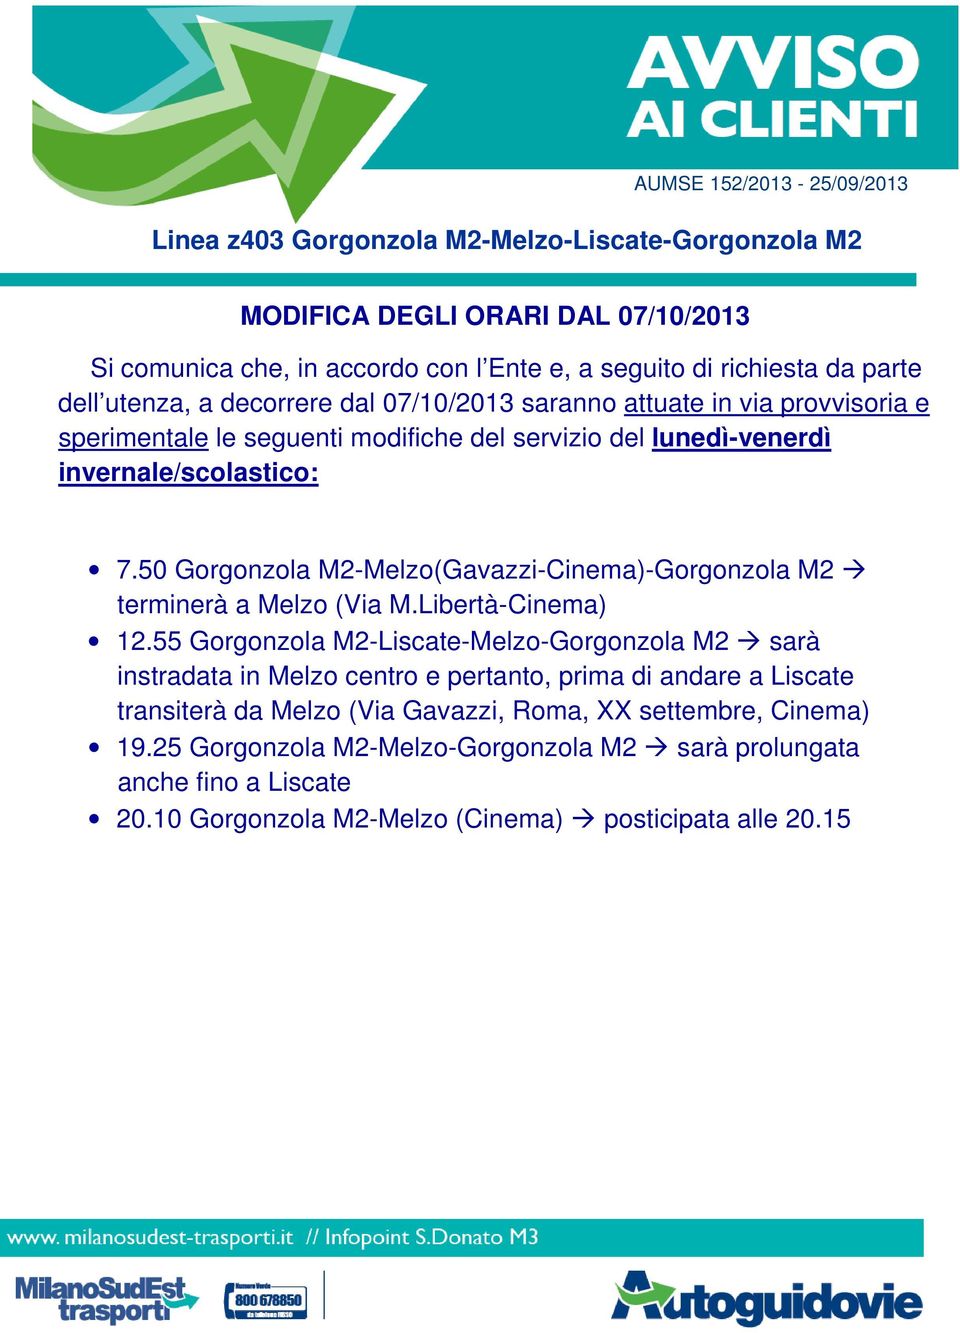 55 Gorgonzola M2-Liscate-Melzo-Gorgonzola M2 sarà instradata in Melzo centro e pertanto, prima di andare a Liscate